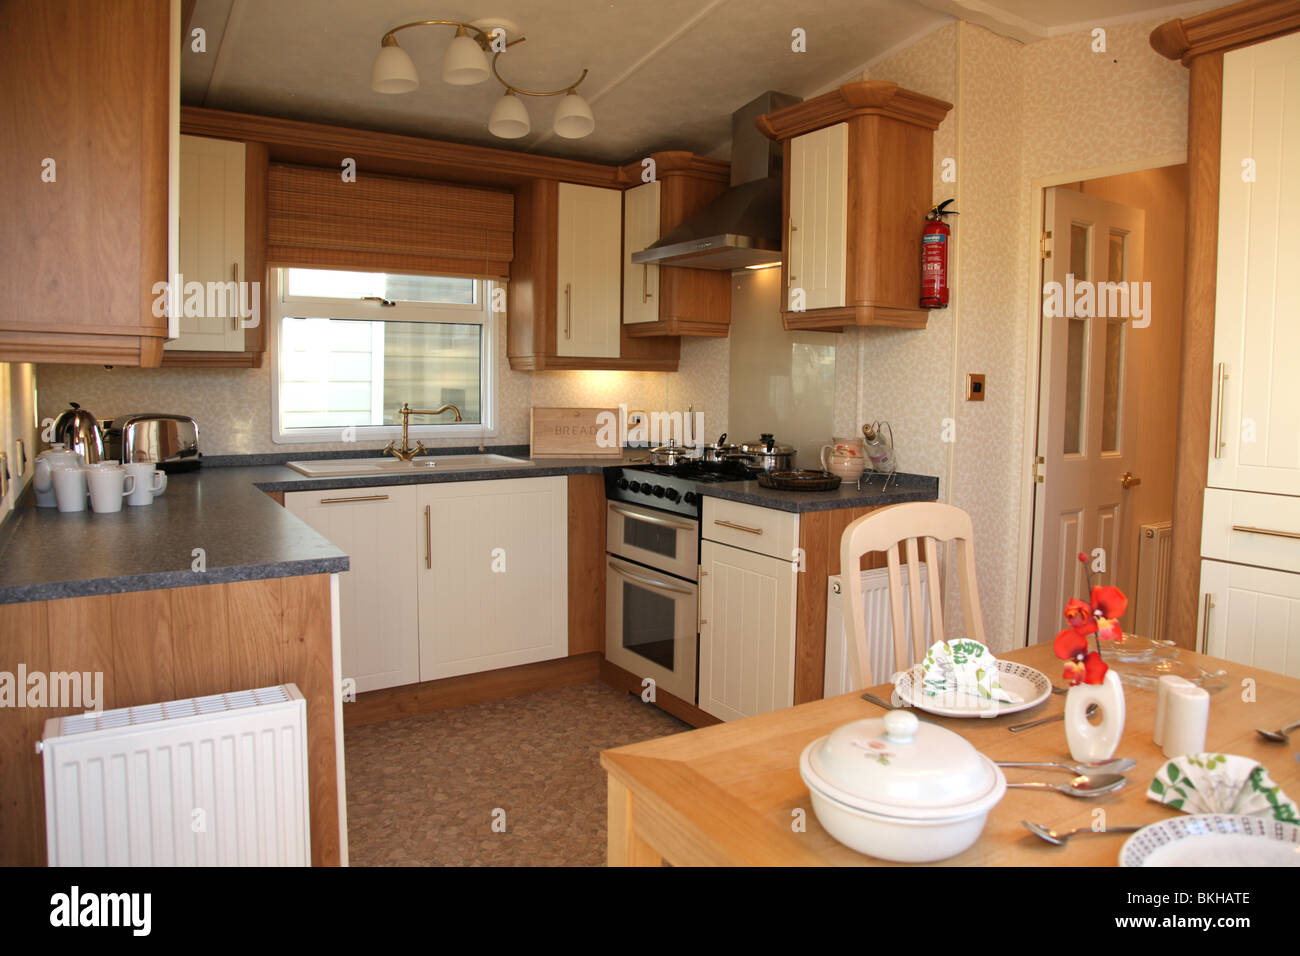 Bild von einem Luxus statische Urlaub Wohnwagen Innere des Bereichs Küche und Essbereich Stockfoto